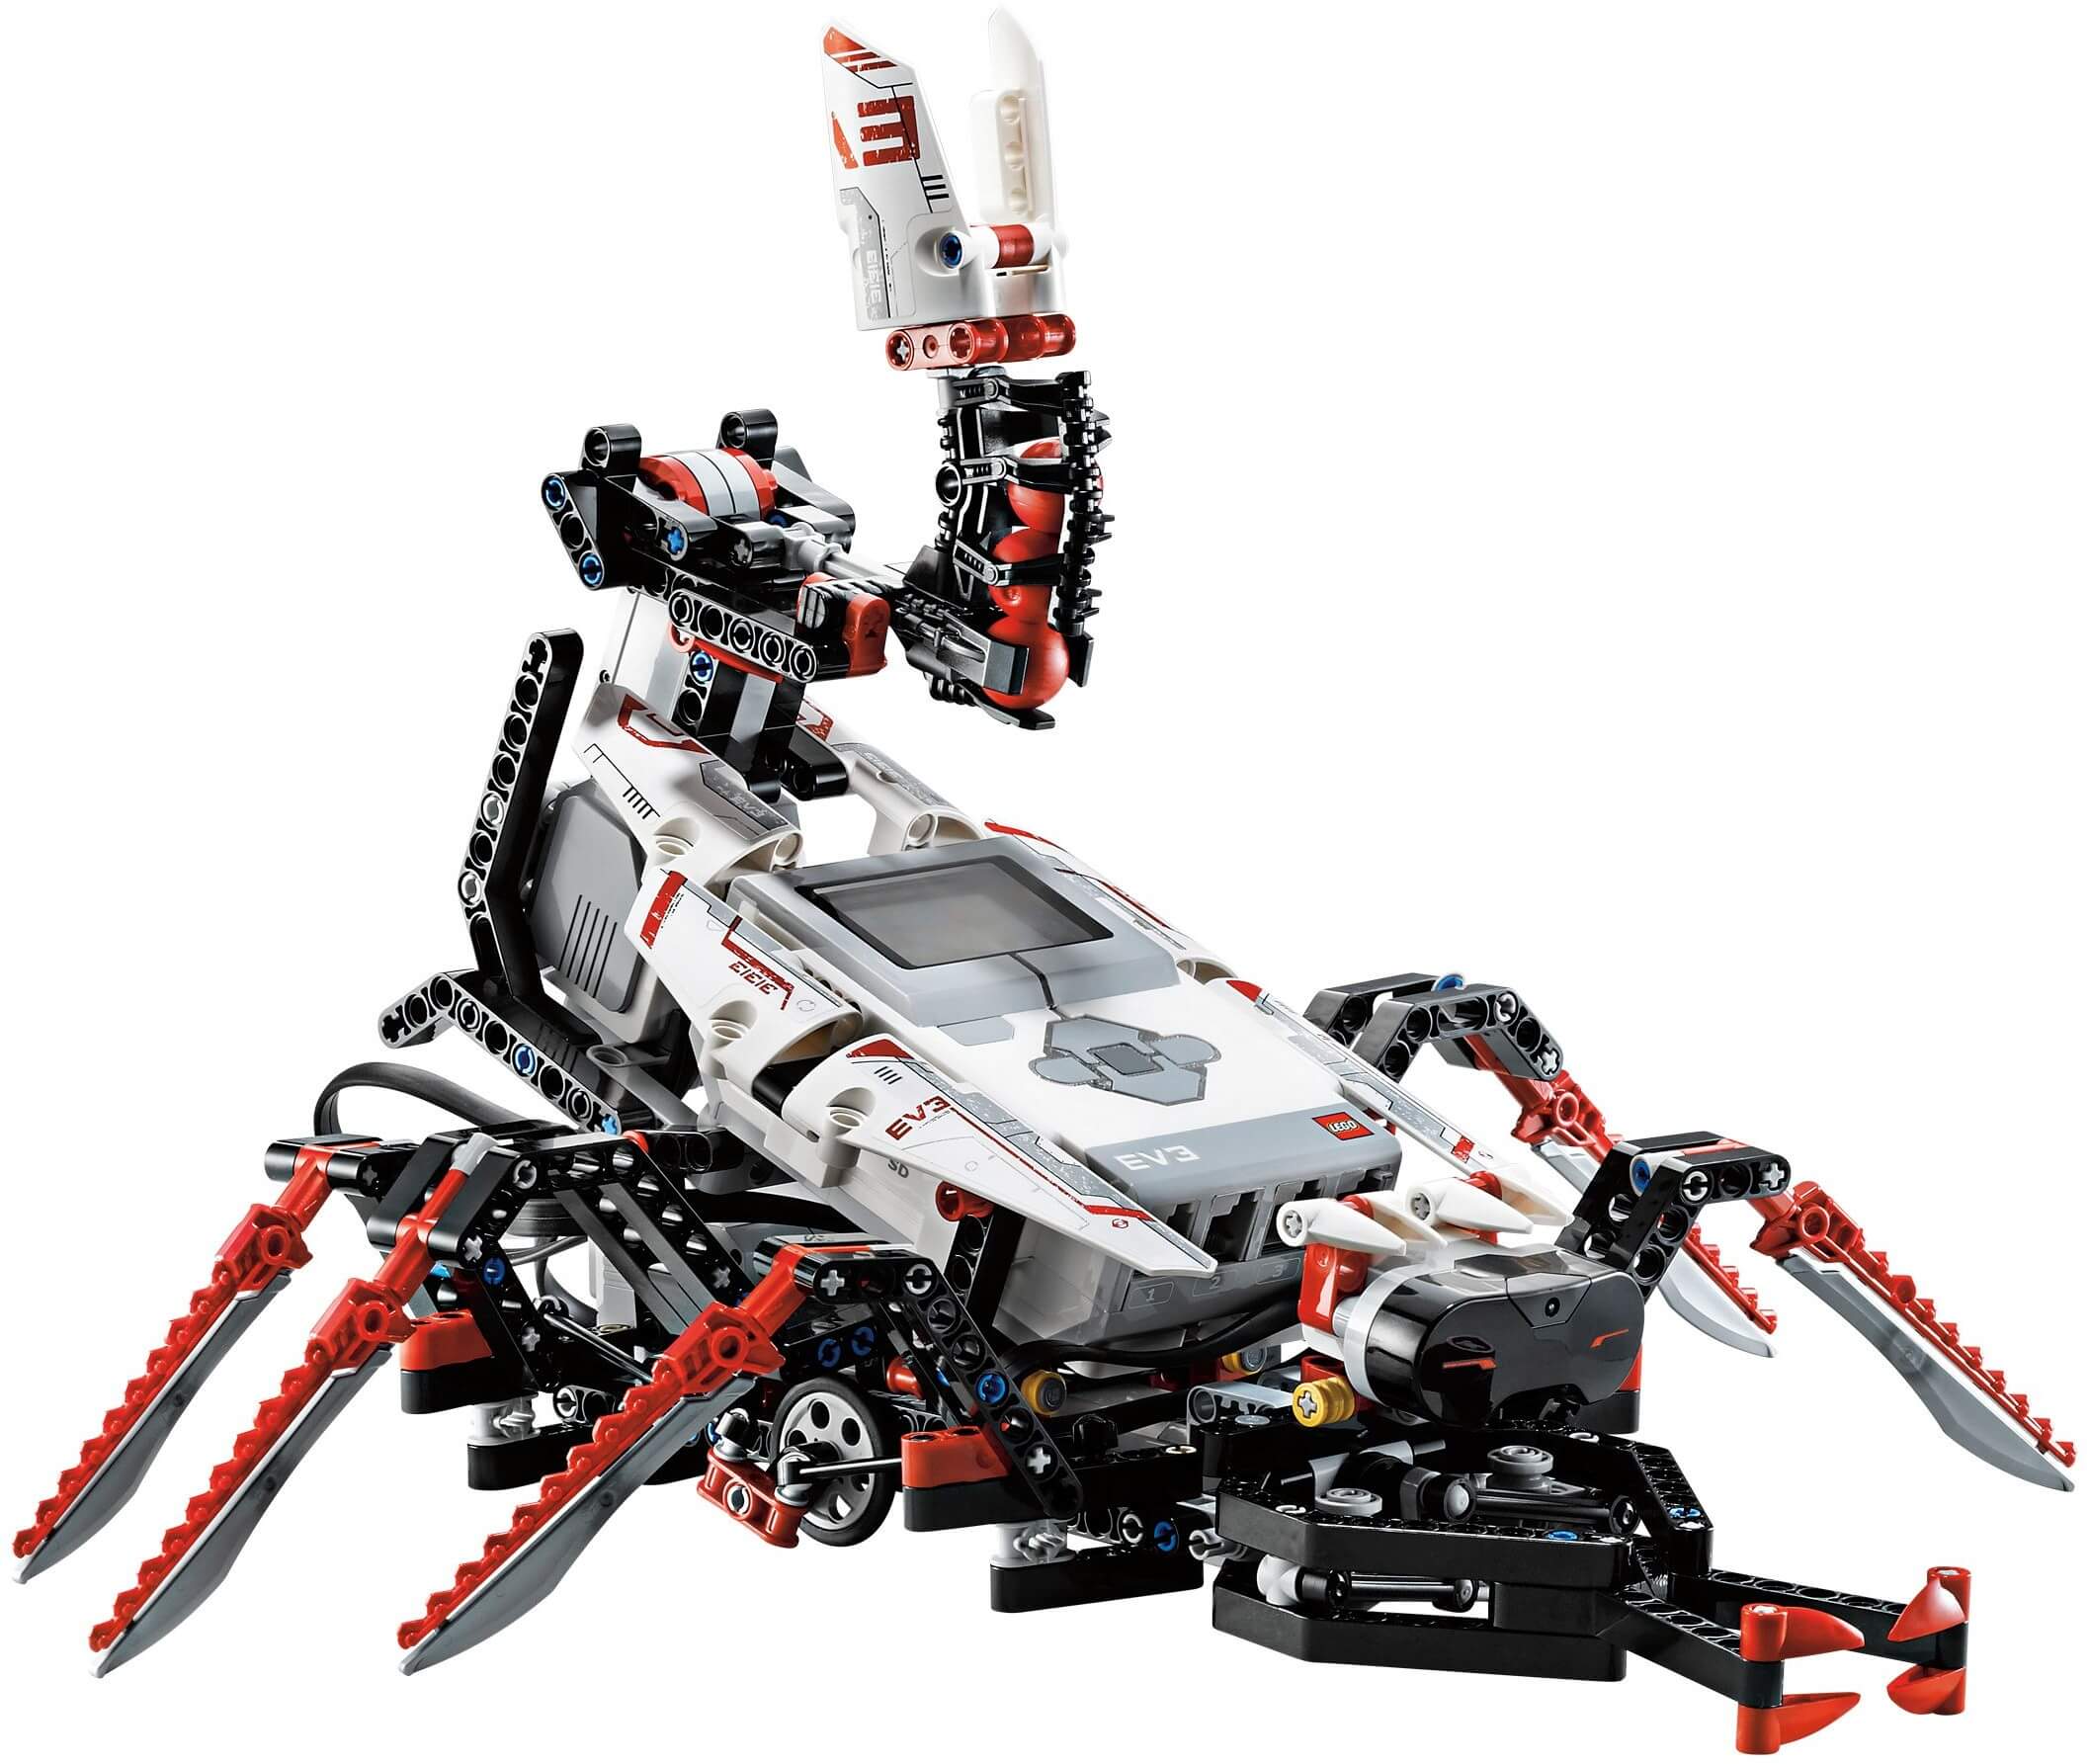 Đồ chơi lắp ráp LEGO Mindstorms 31313  Bộ mô hình Lắp ráp và lập trình  Robot Mindstorms EV3 LEGO Mindstorms EV3 31313 giá rẻ tại cửa hàng  LegoHousevn LEGO Việt Nam